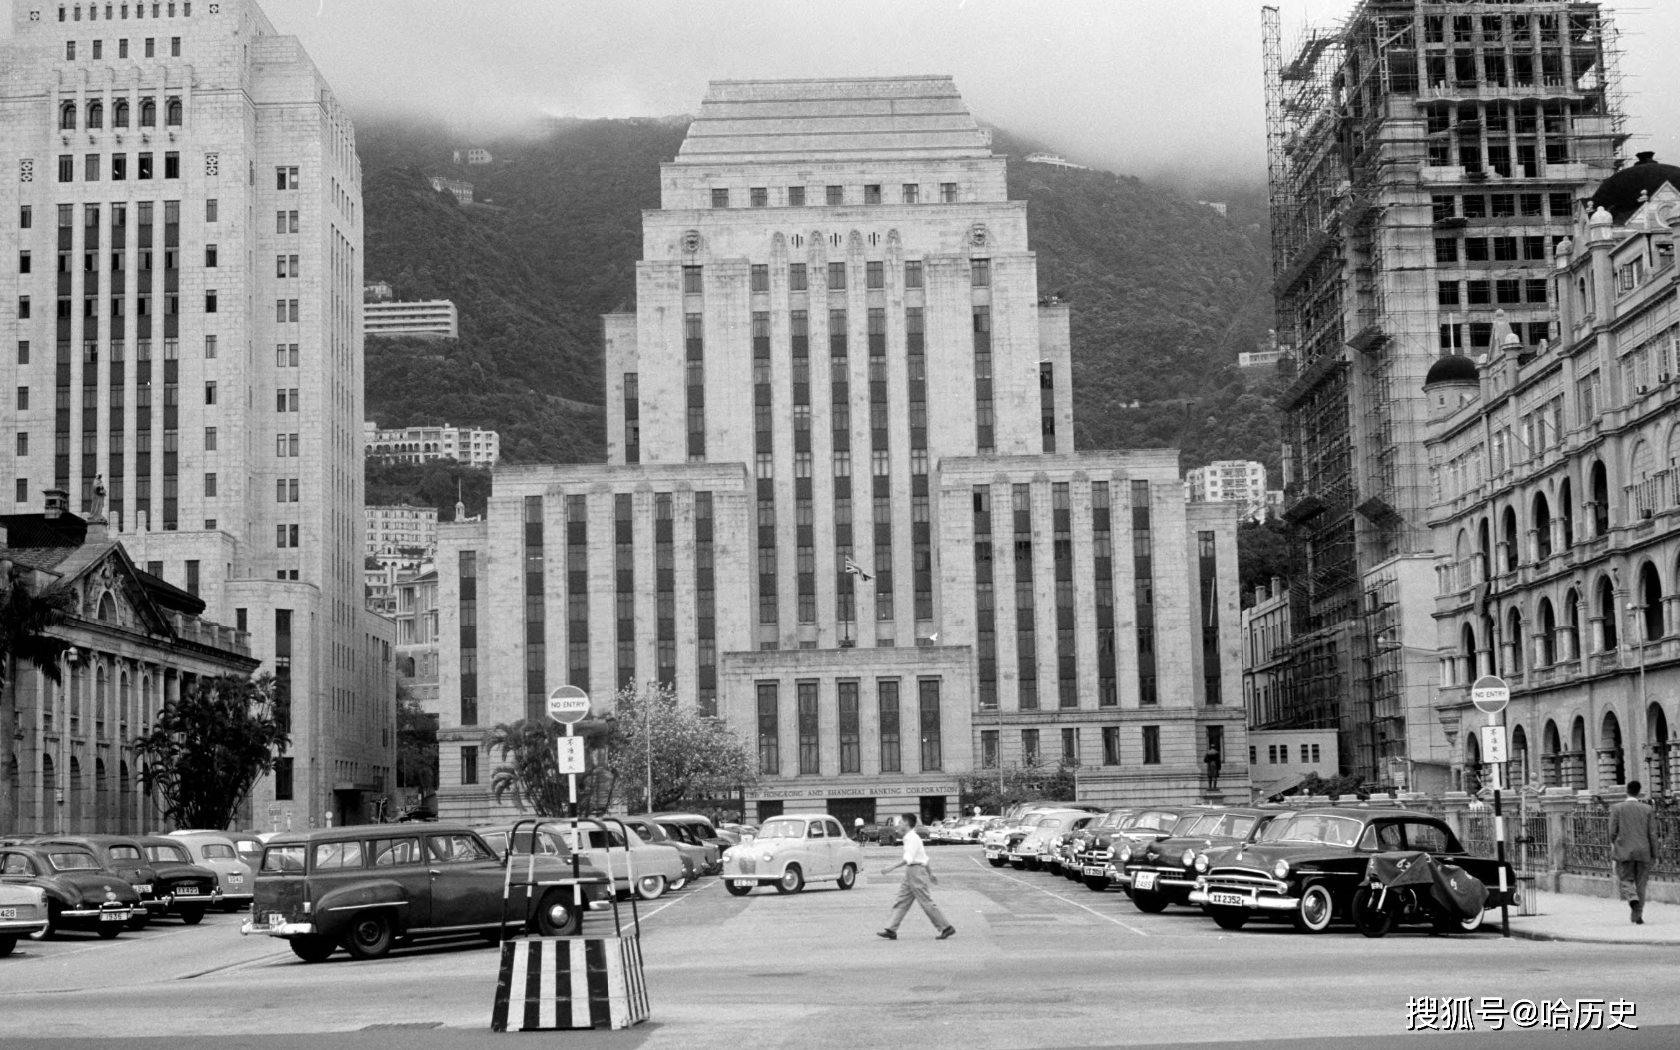 老照片:40-50年代香港,欧式建筑和传统服饰相融